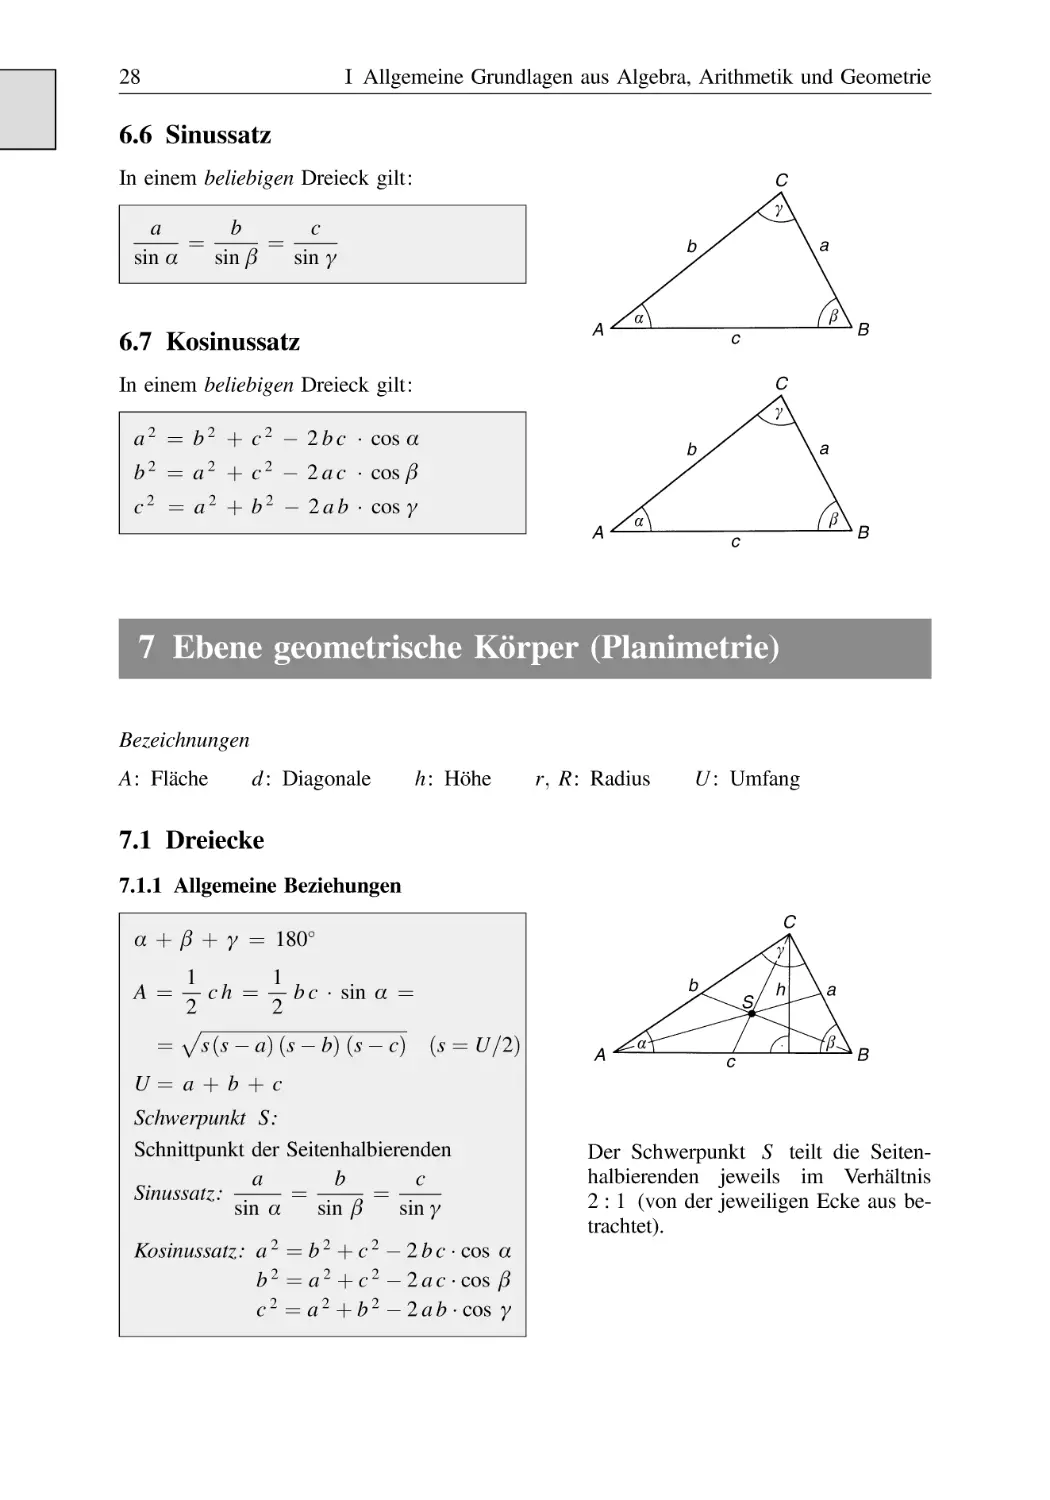 6.6 Sinussatz
6.7 Kosinussatz
7 Ebene geometrische Körper (Planimetrie)
7.1 Dreiecke
7.1.1 Allgemeine Beziehungen